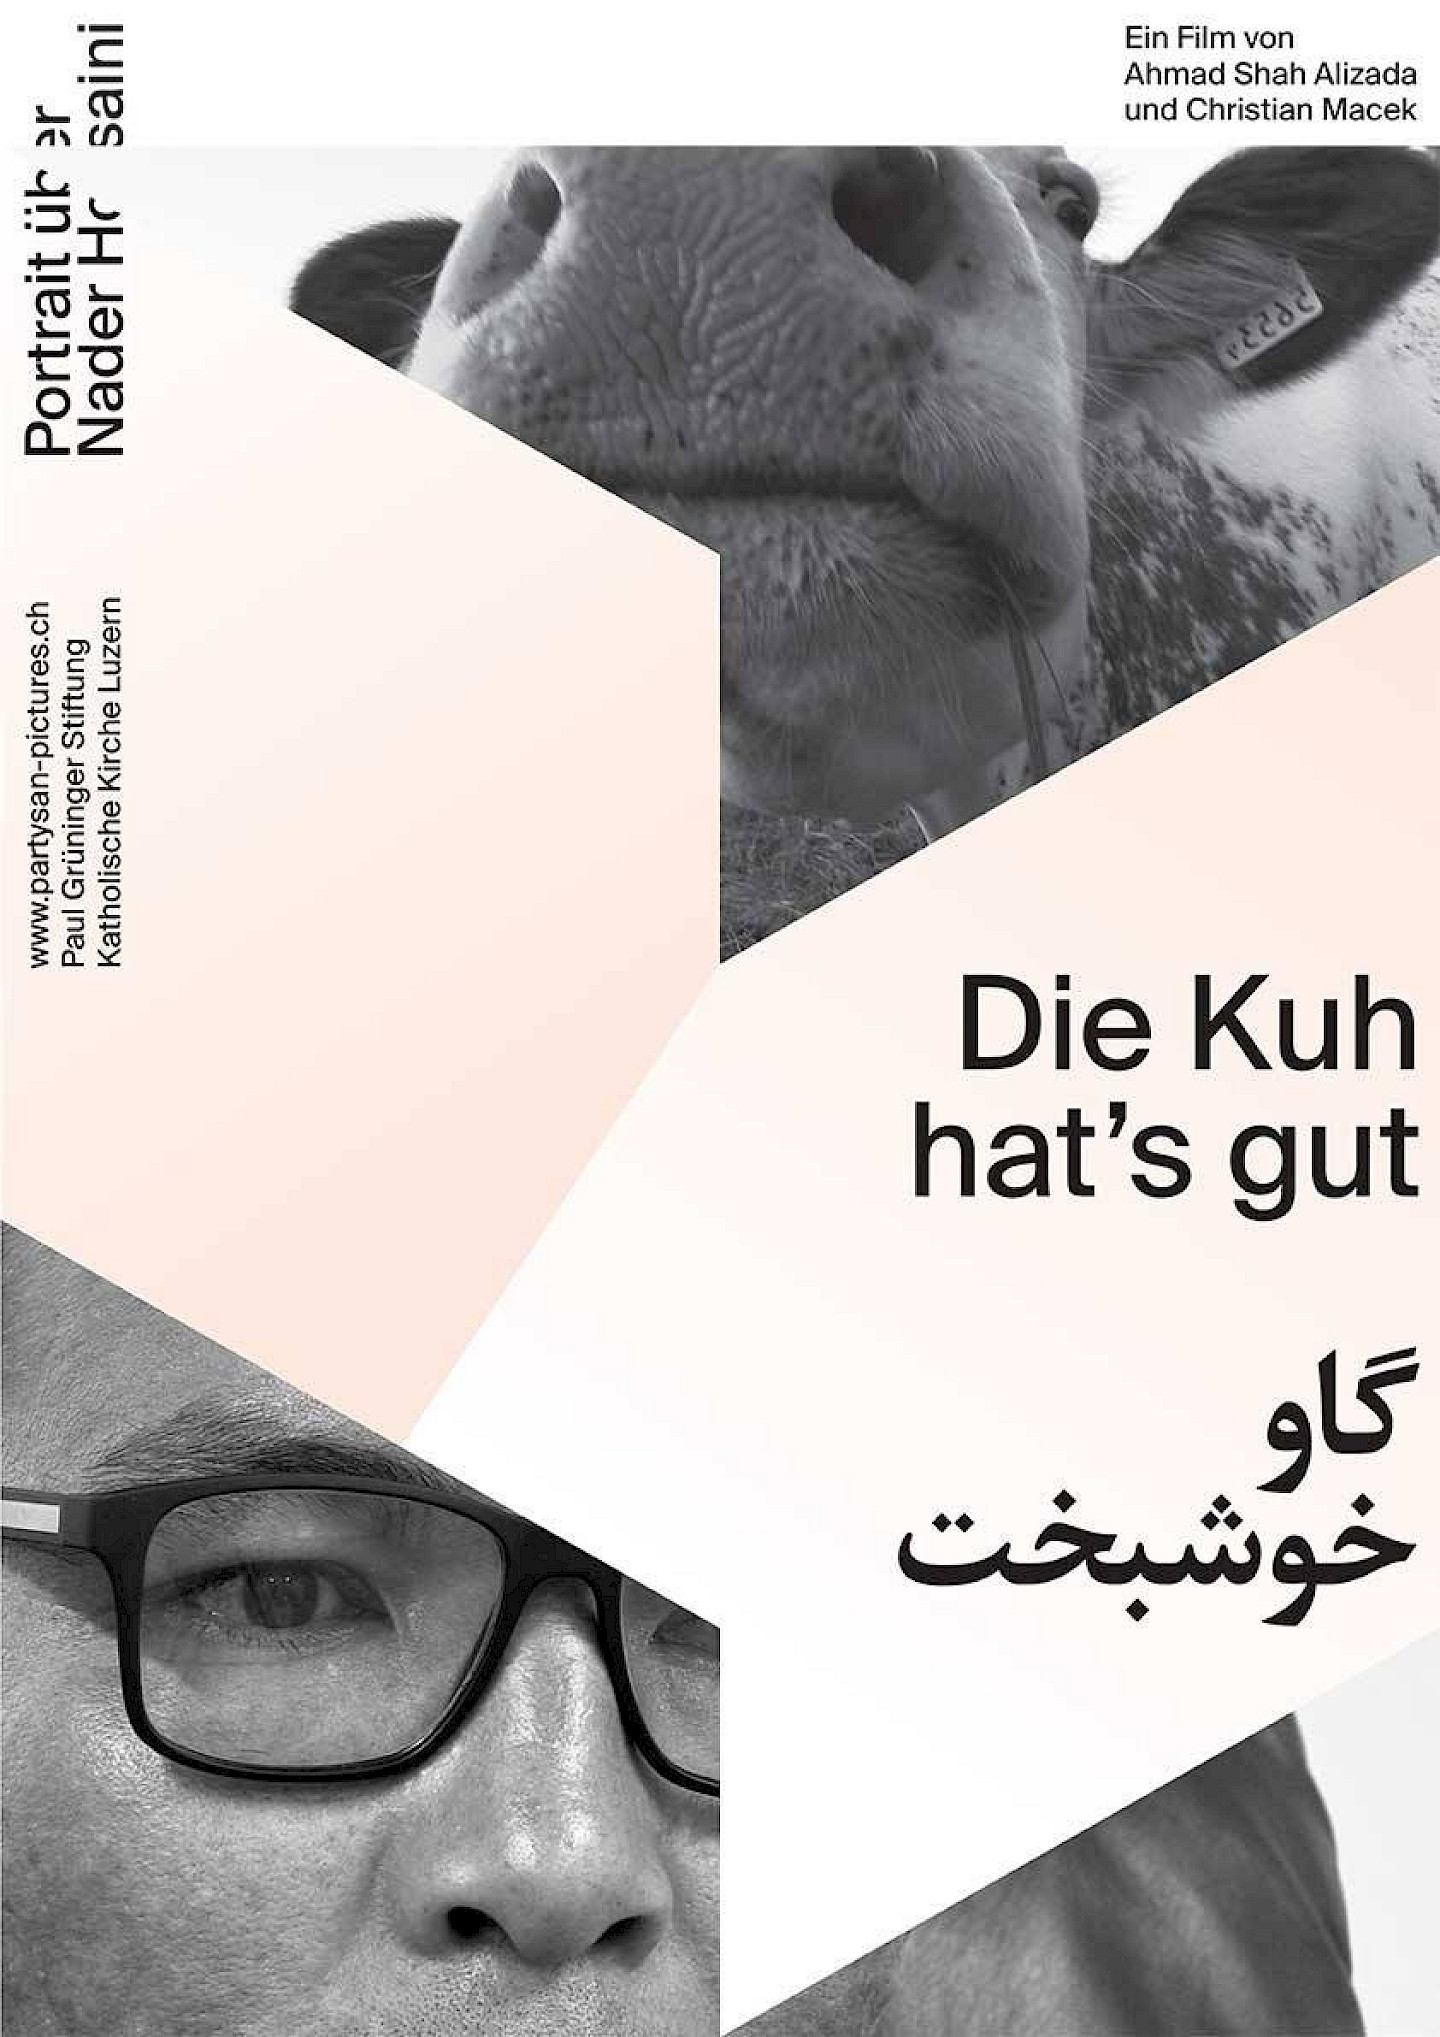 Flyer Afghanische Filmemacher im Exil - Kurzfilmabend & Diskussion